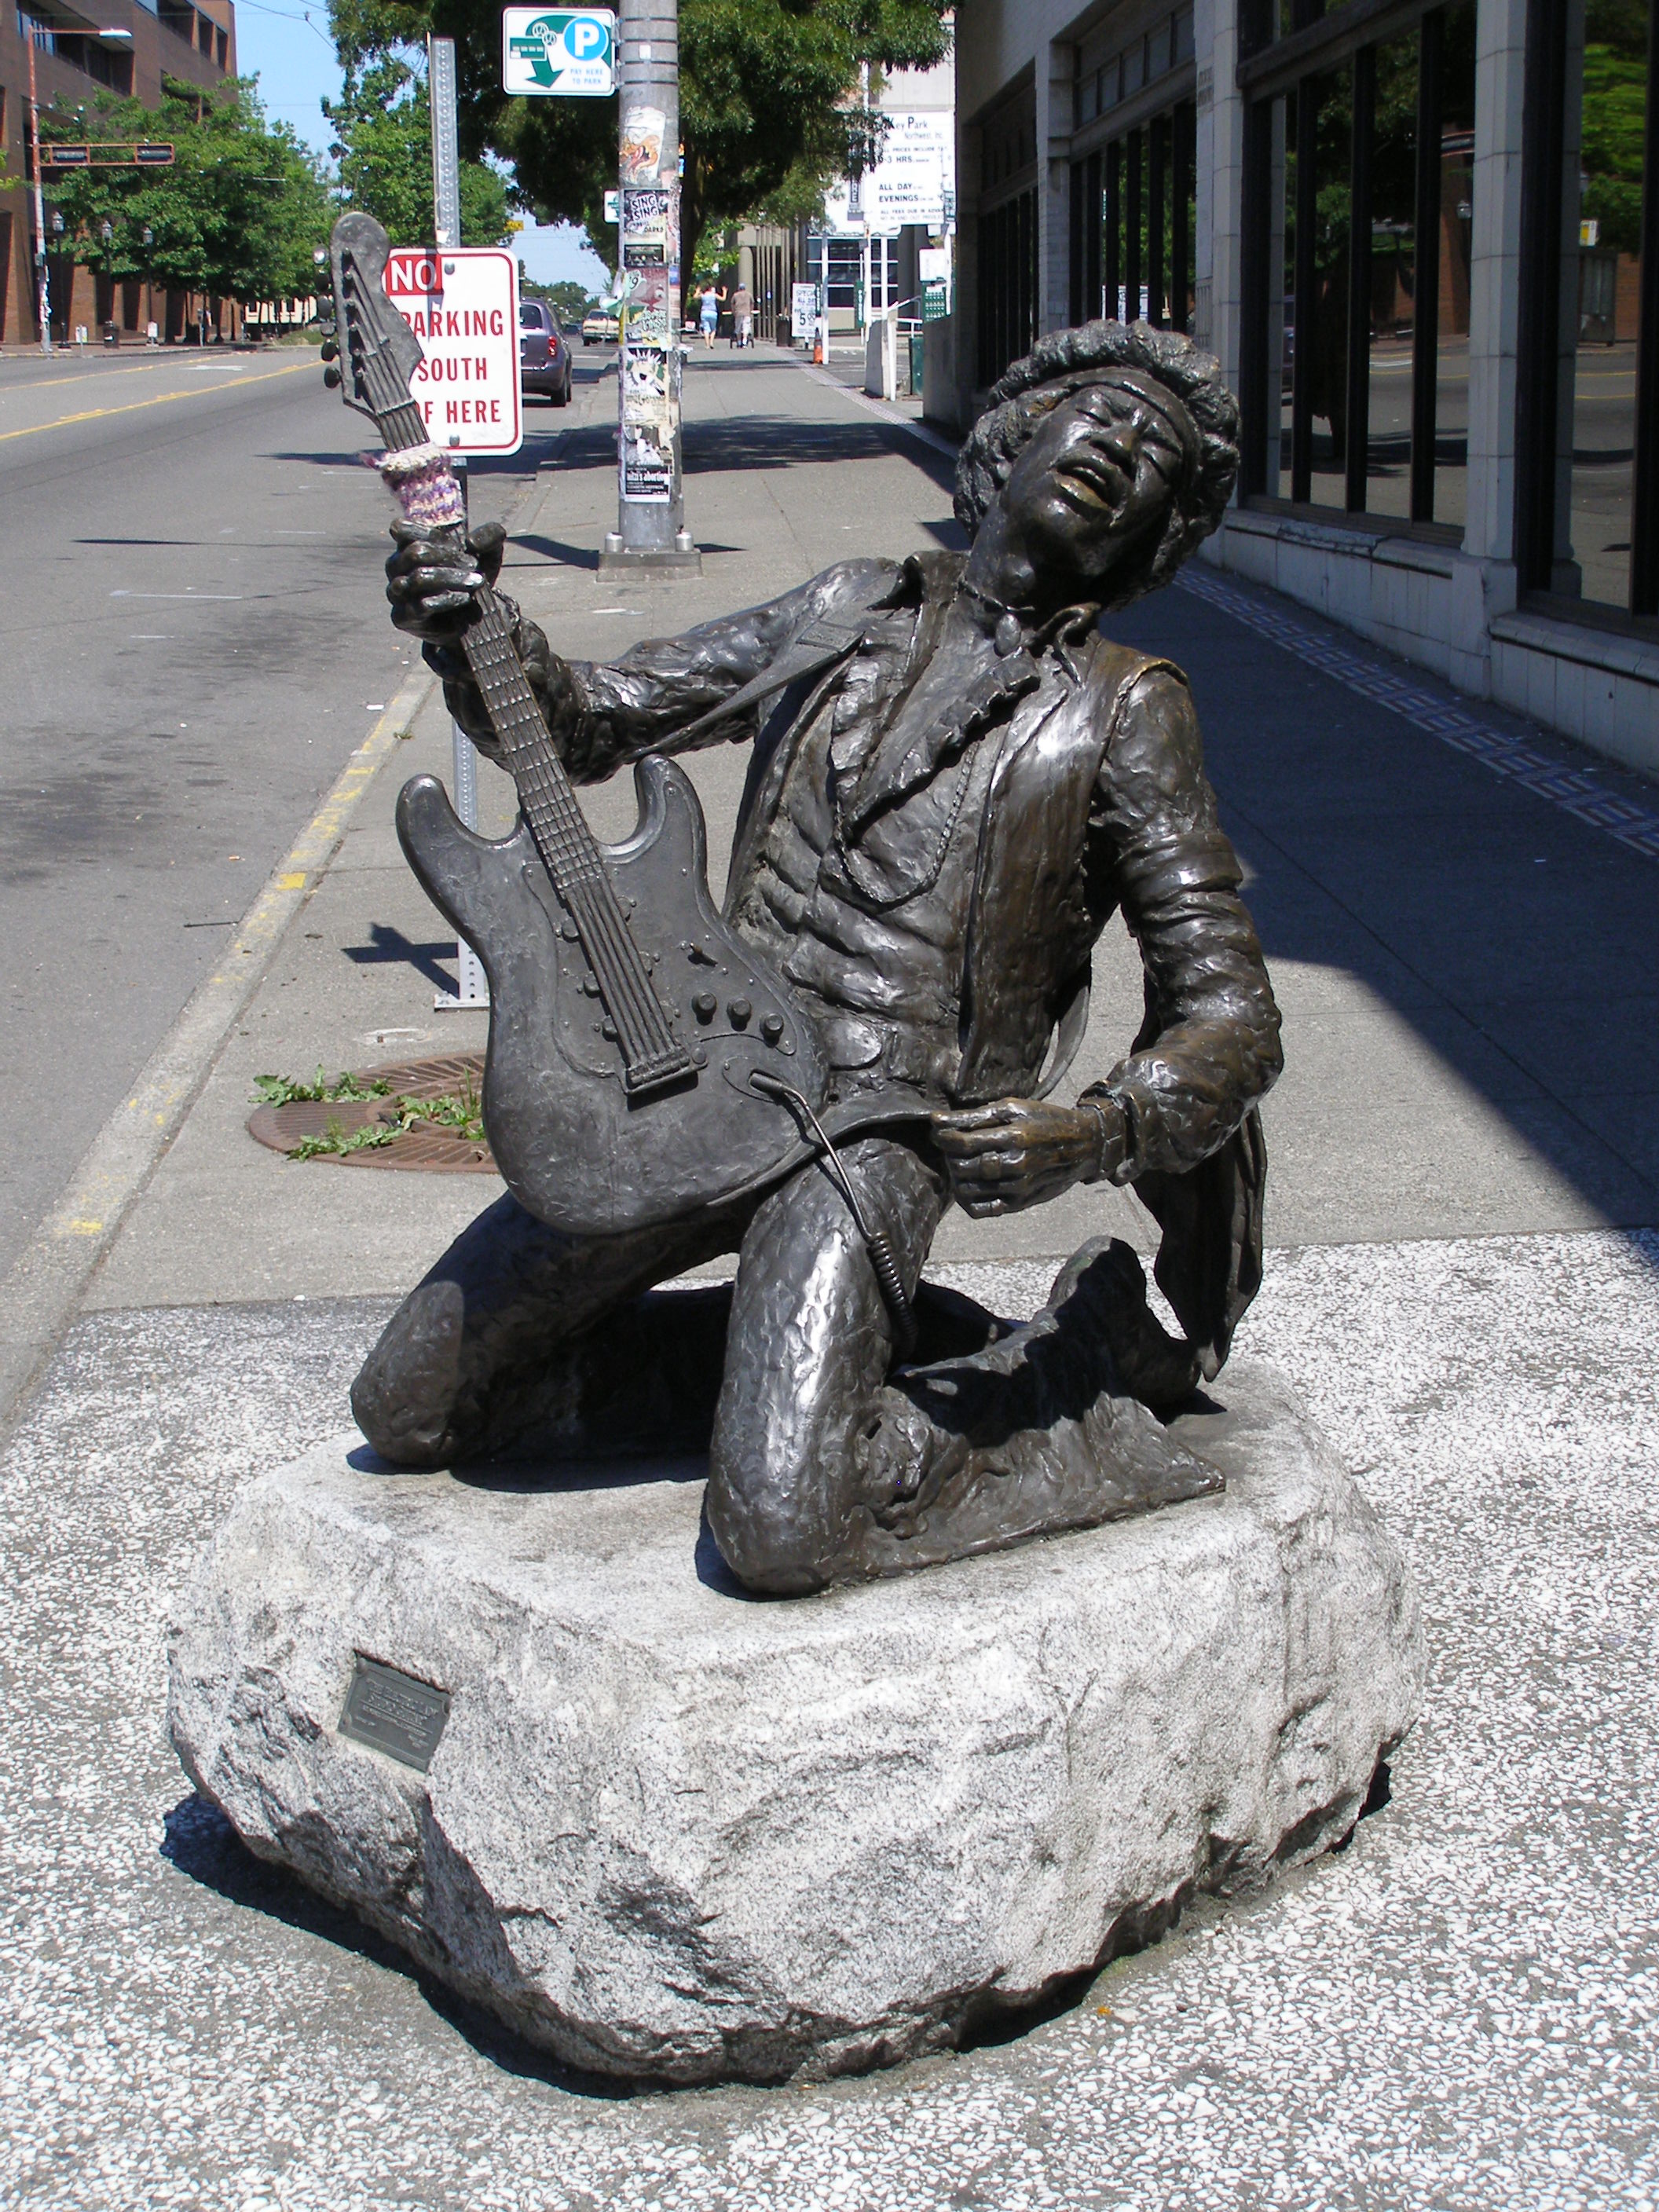 Джими Хендрикс, гитары, статуи - обои на рабочий стол